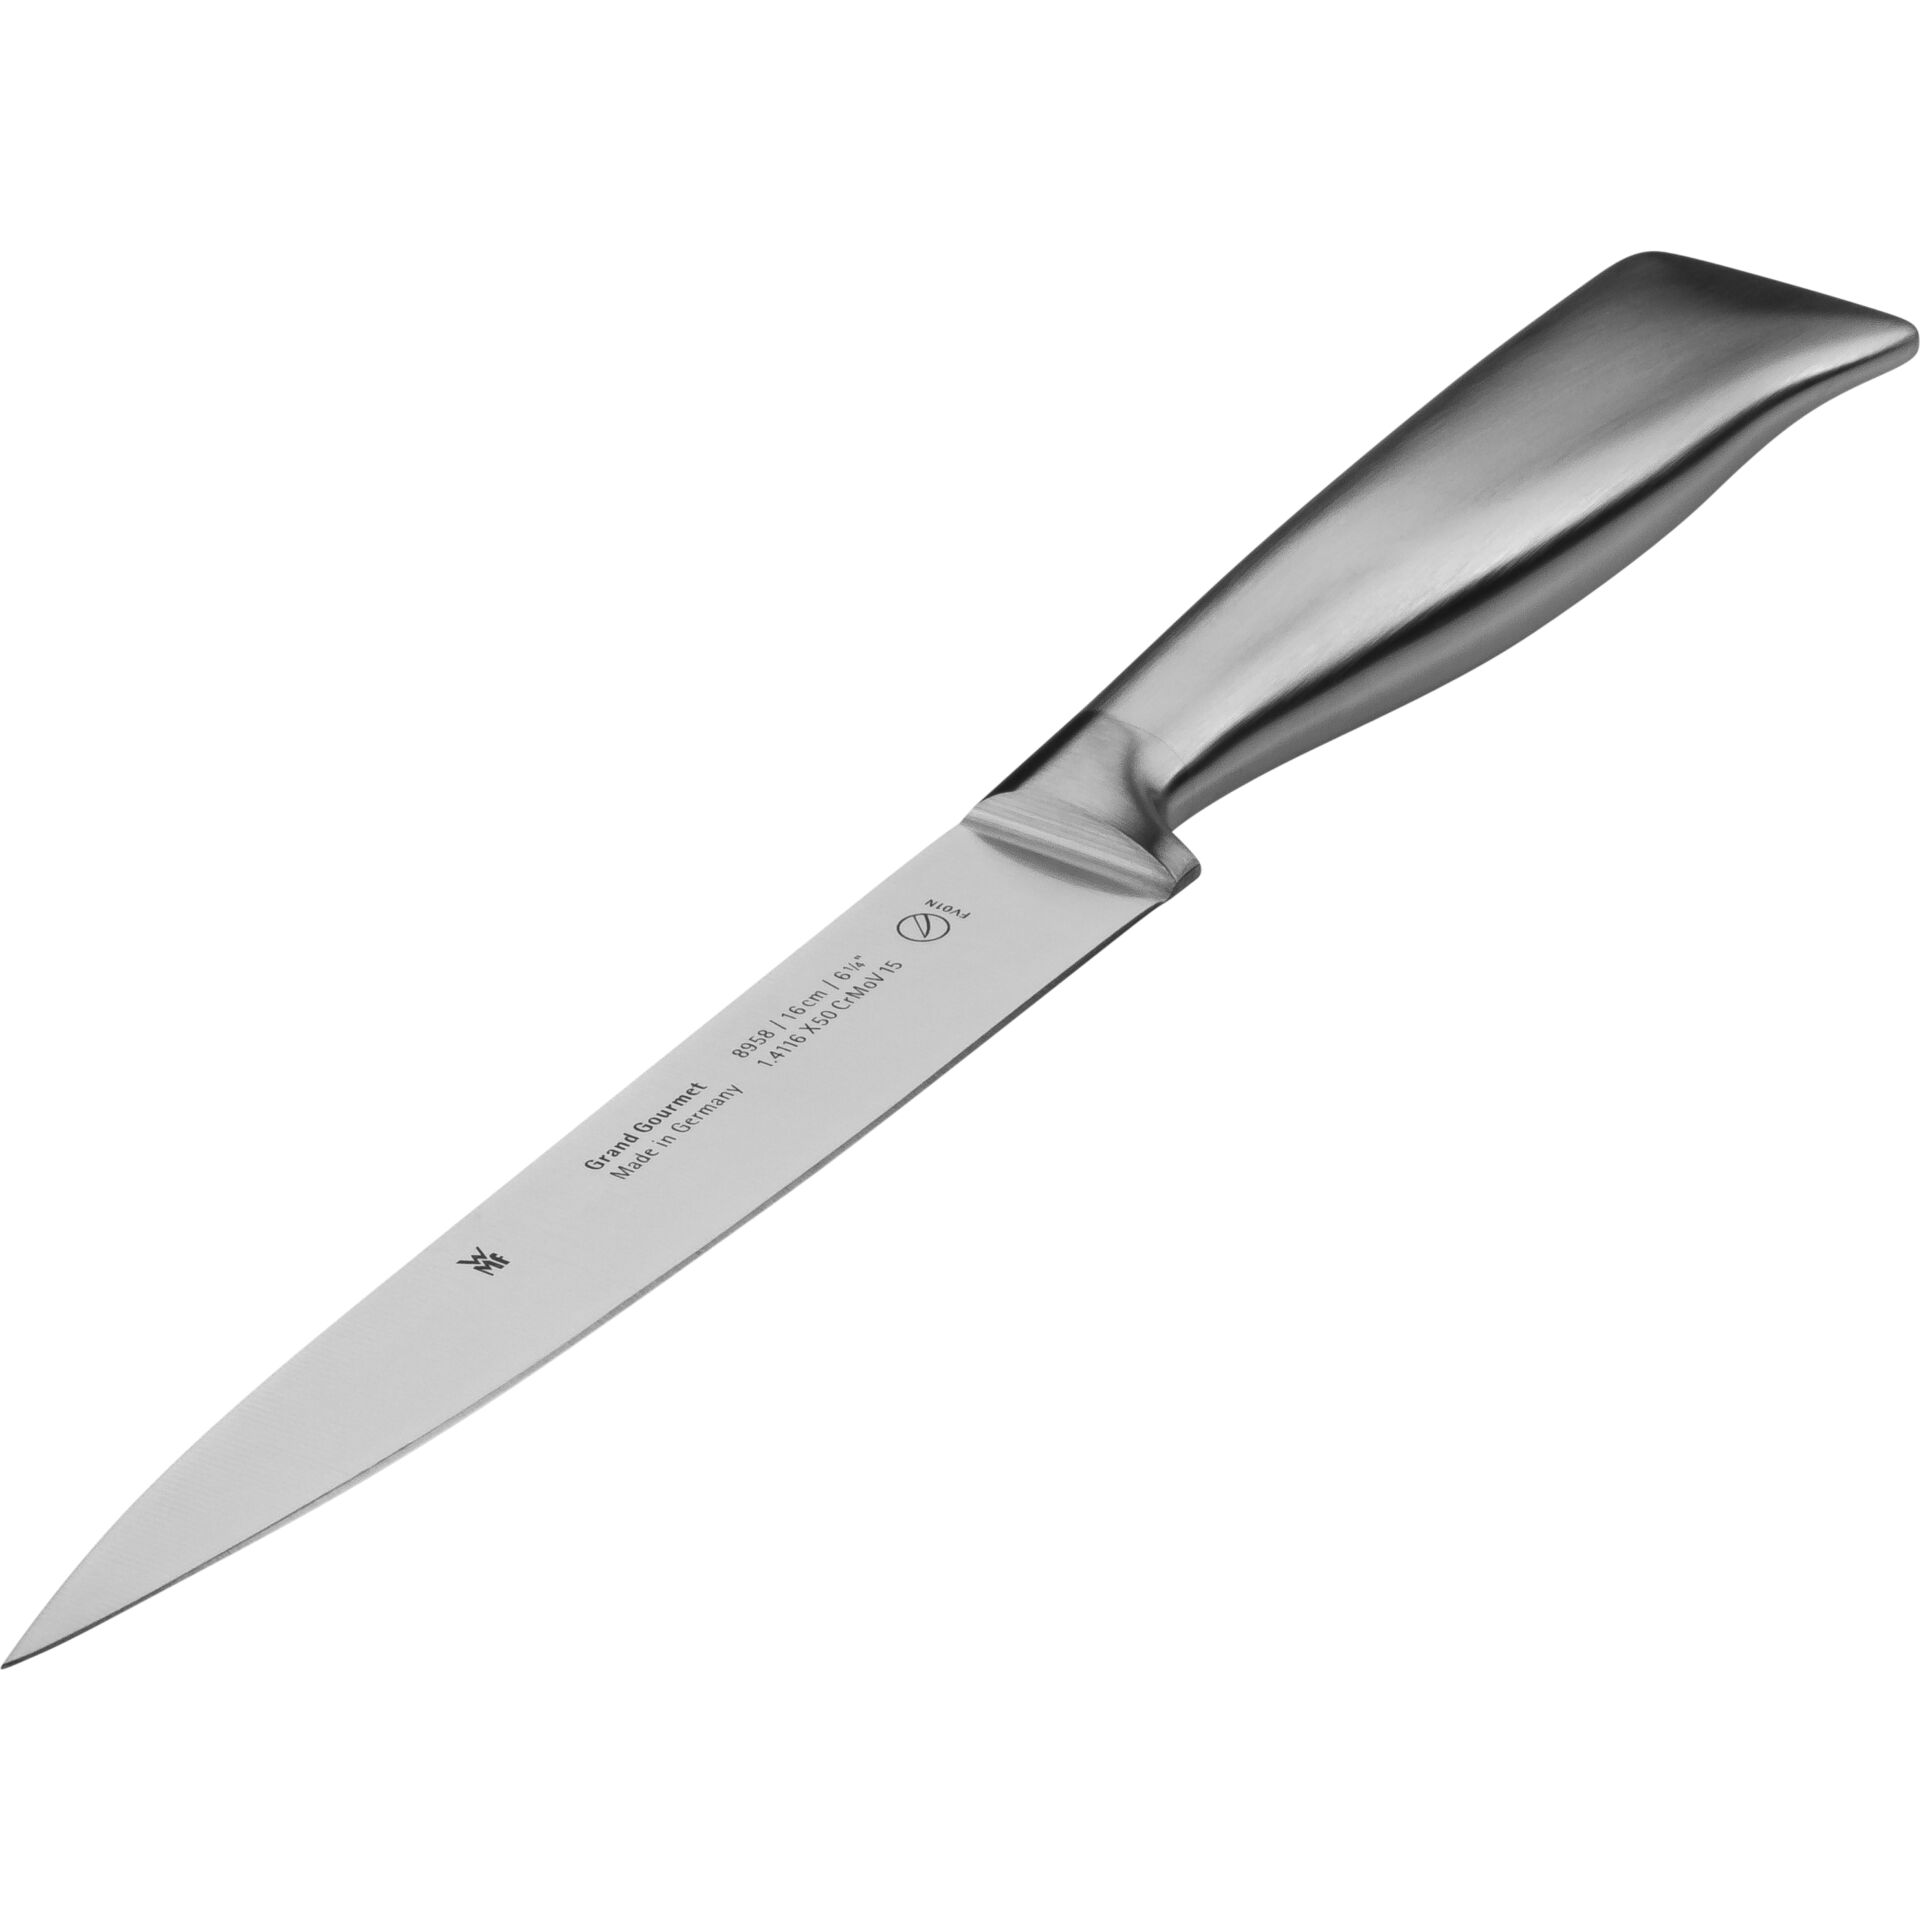 WMF filleting knife 16 cm